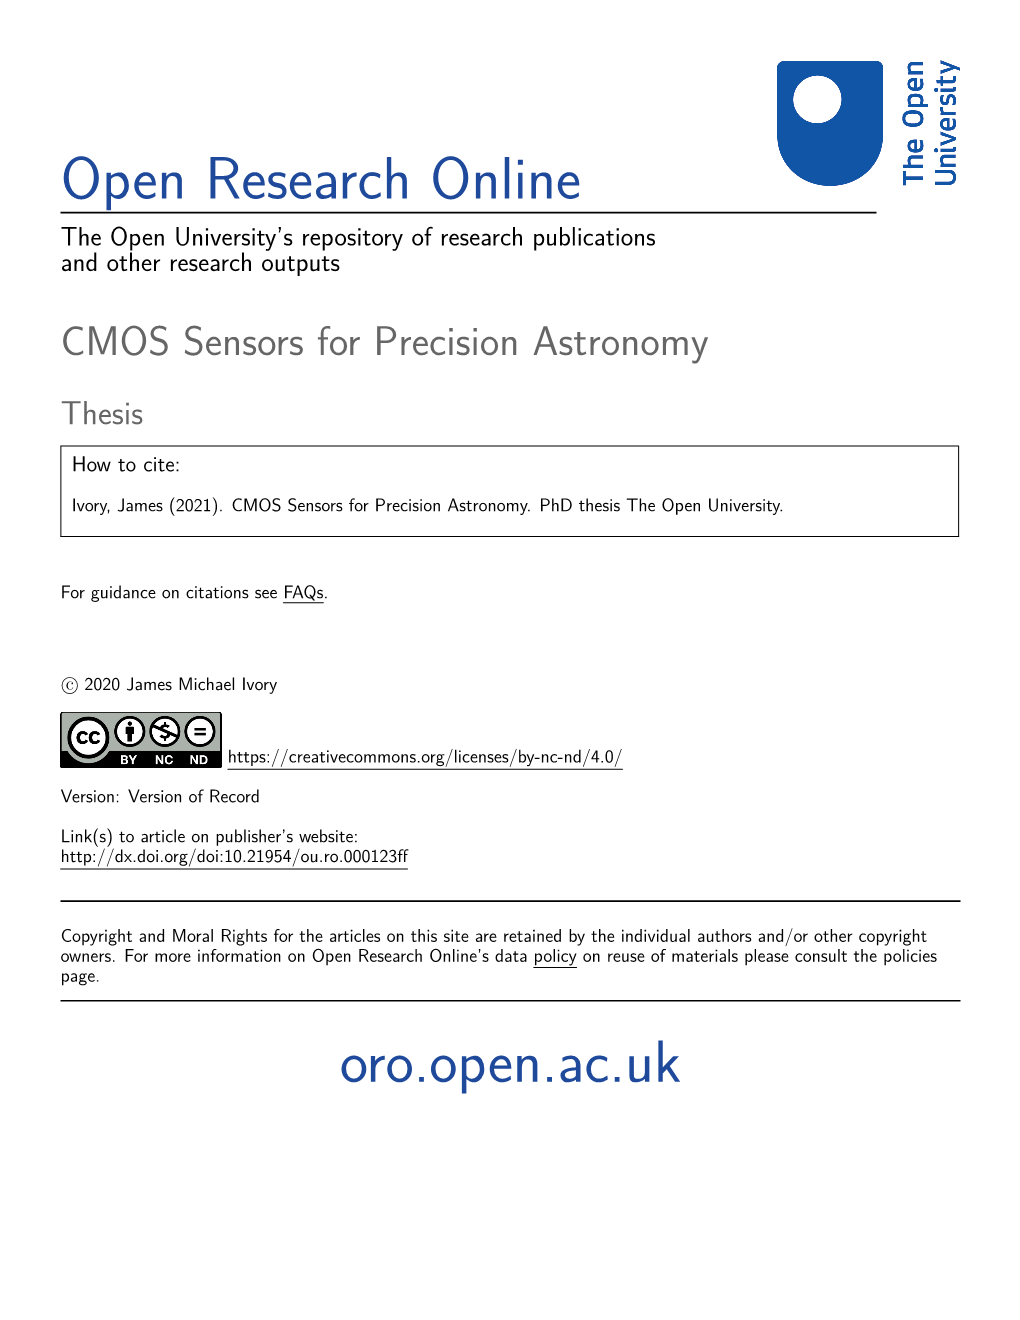 CMOS Sensors for Precision Astronomy